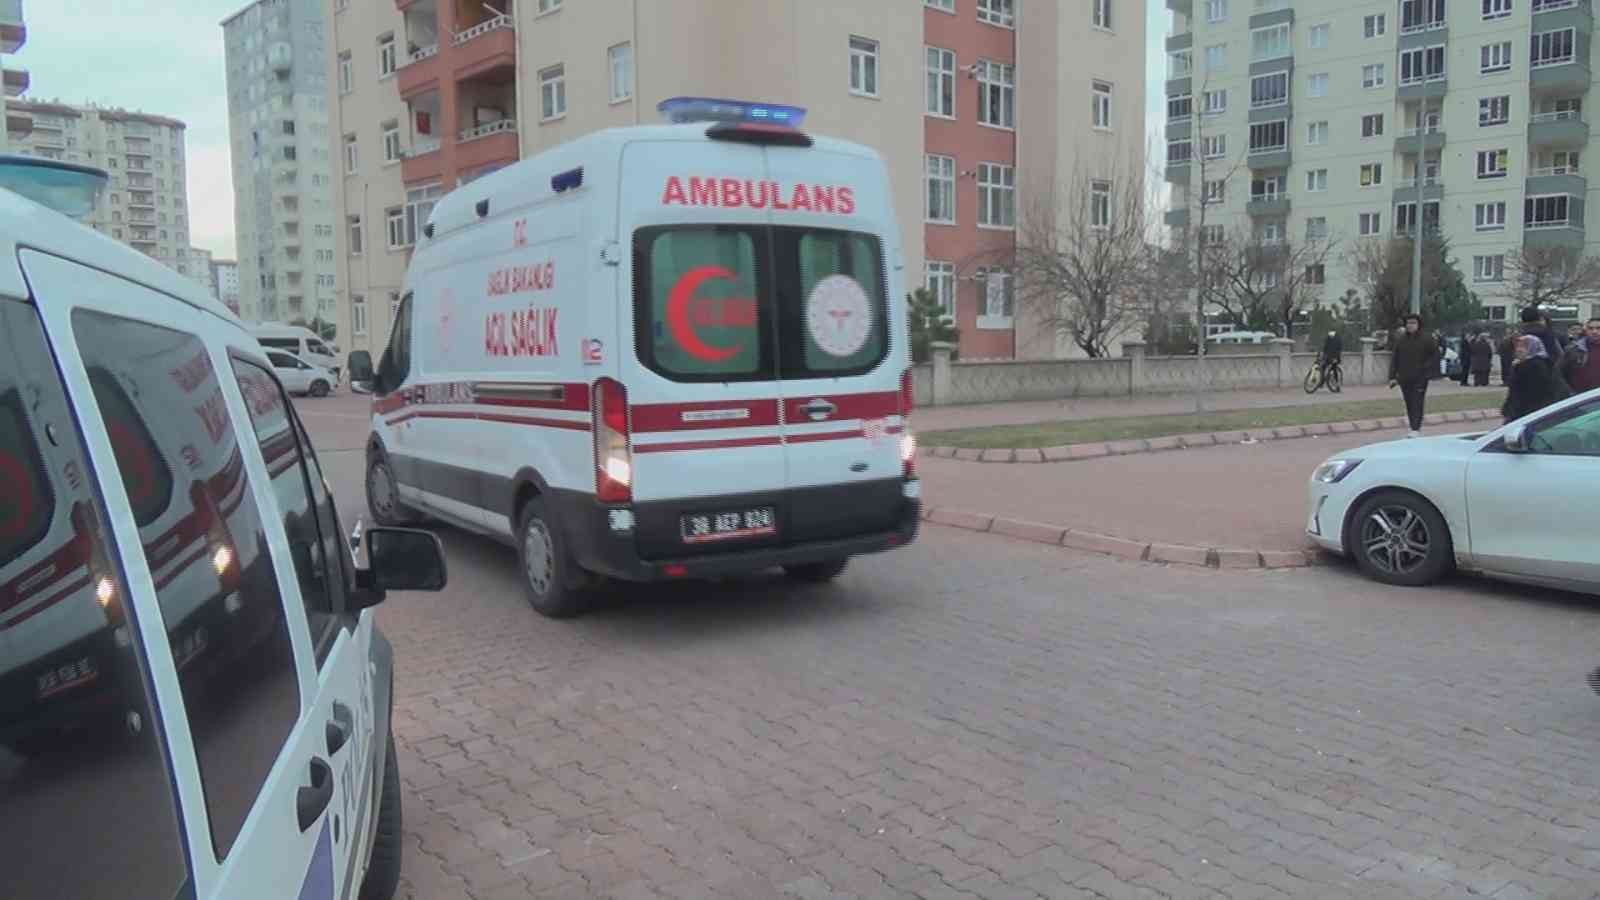 Kayseri’de 7. kattan düşen iki kuzen kız çocuğu hayatını kaybetti #kayseri